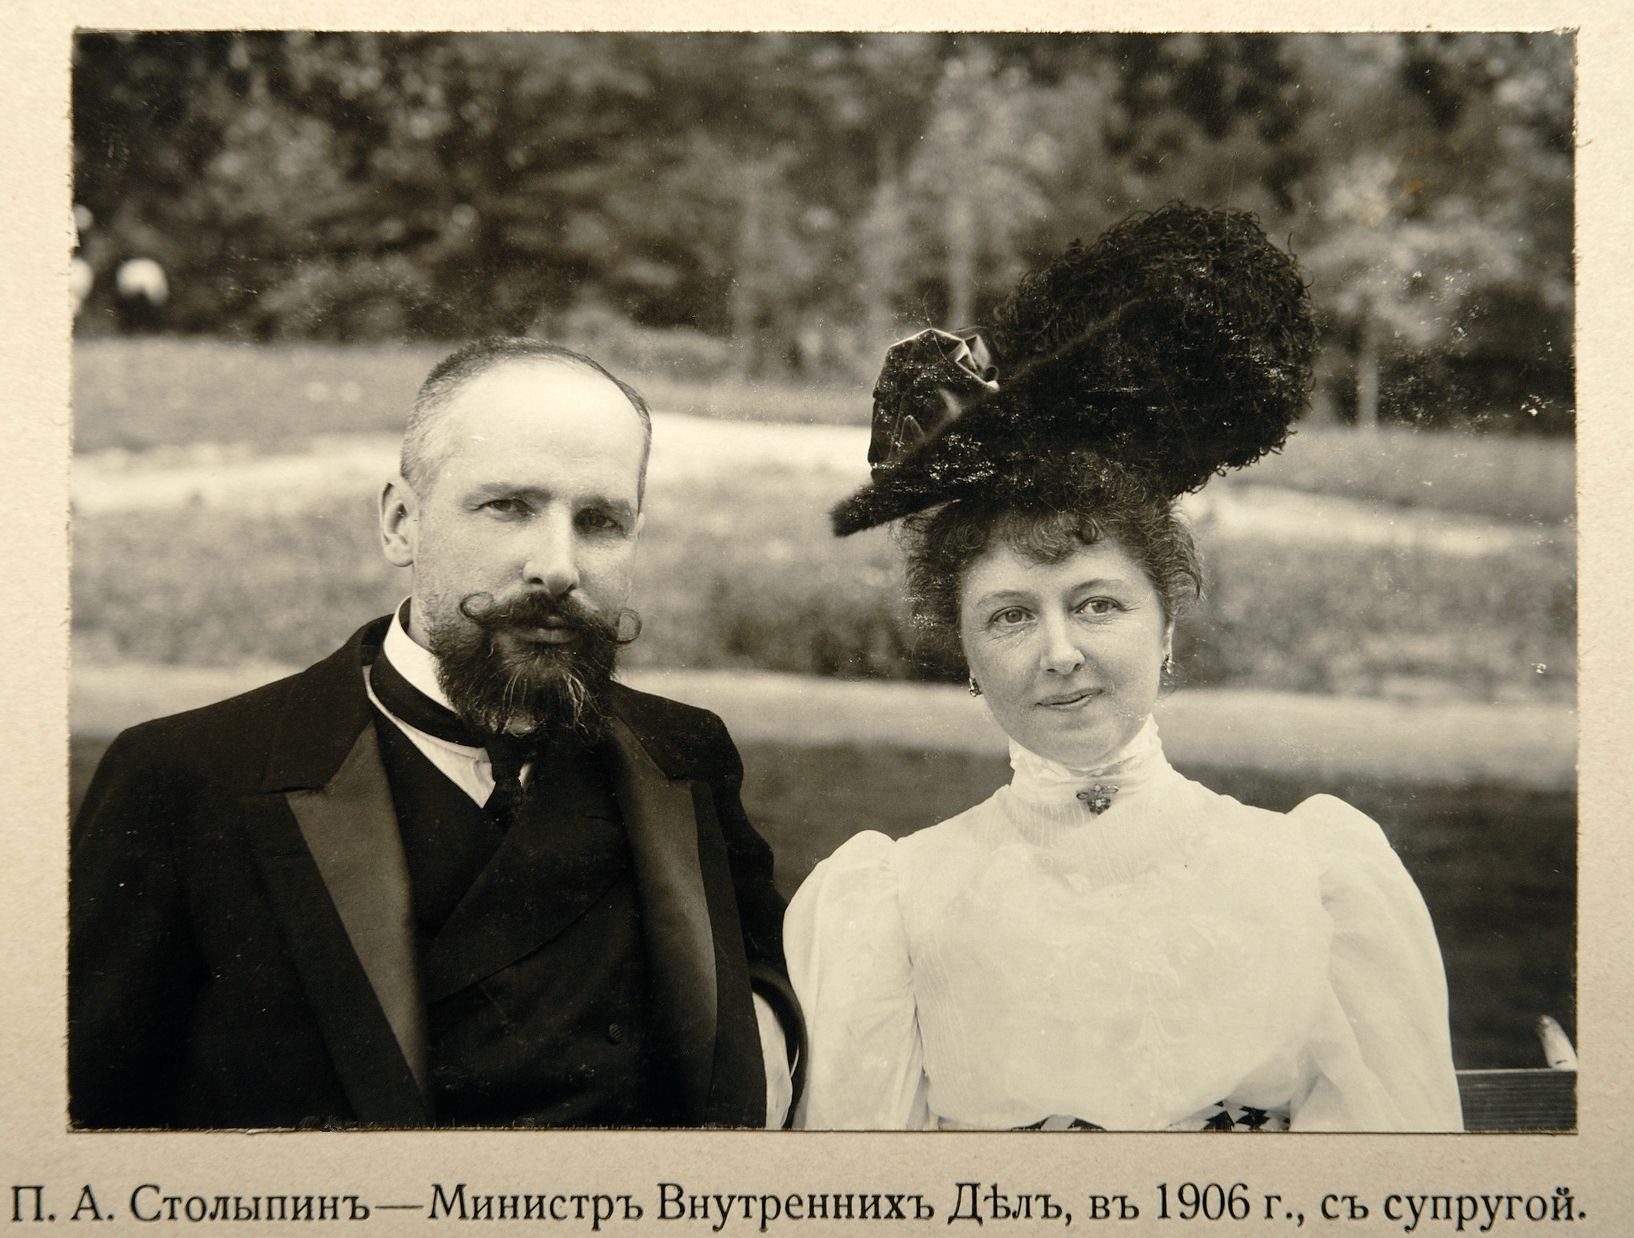 П. А. Столыпин с супругой